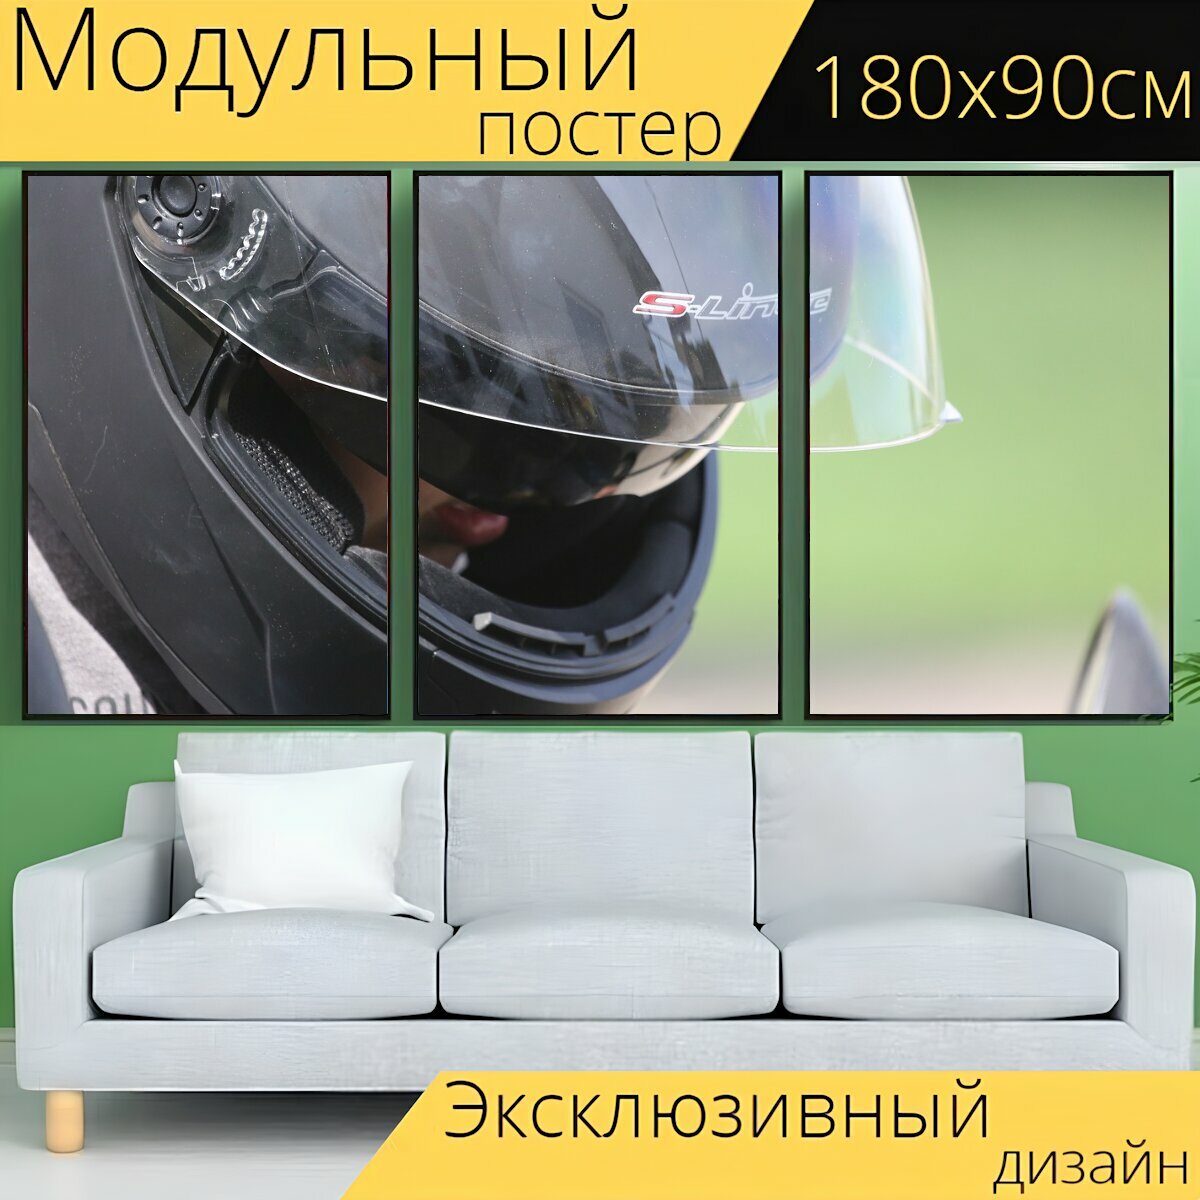 Модульный постер "Шлем, безопасность, мотоциклетный шлем" 180 x 90 см. для интерьера